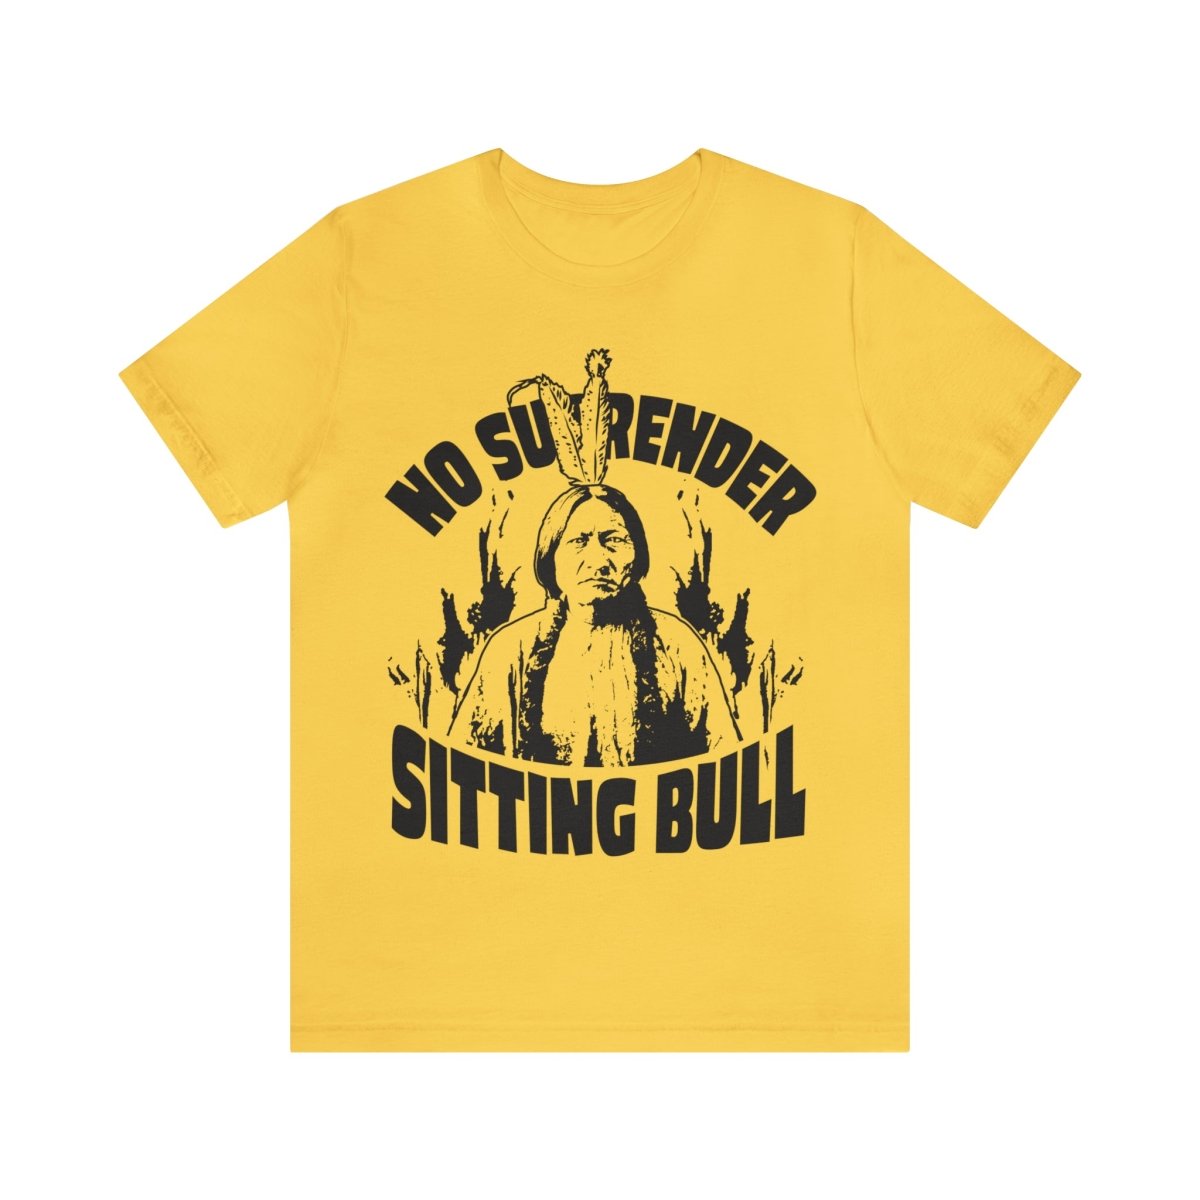 Sitting Bull, No Surrender Premium T-Shirt, Warrior Spirit Leader, First Nation